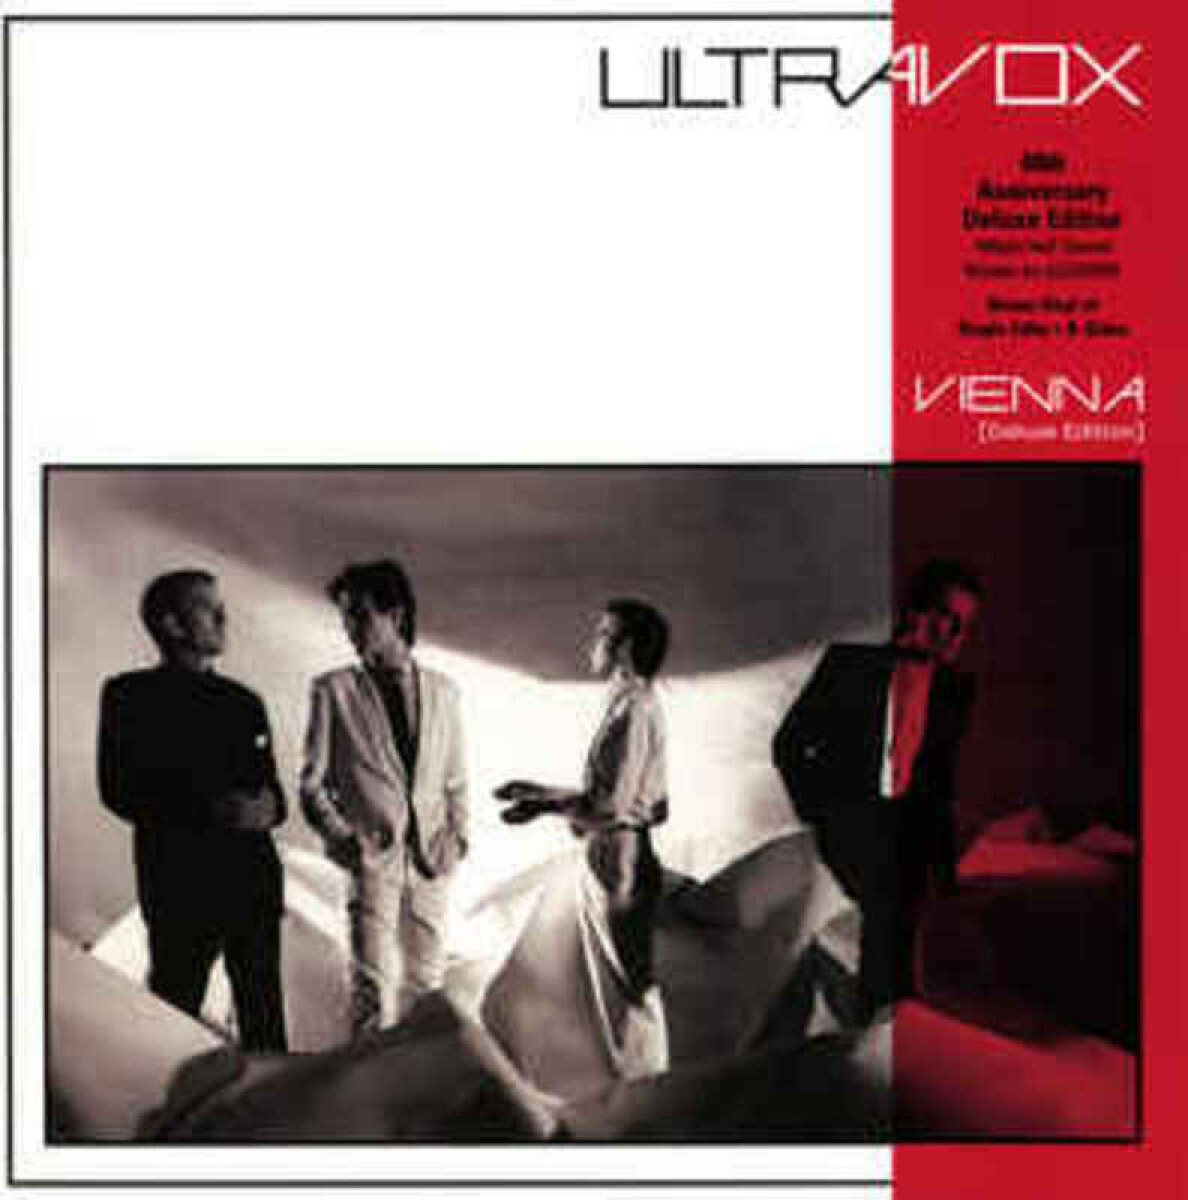 Ultravox - Vienna (deluxe 40th Anniversary Edit) - Vinilo 